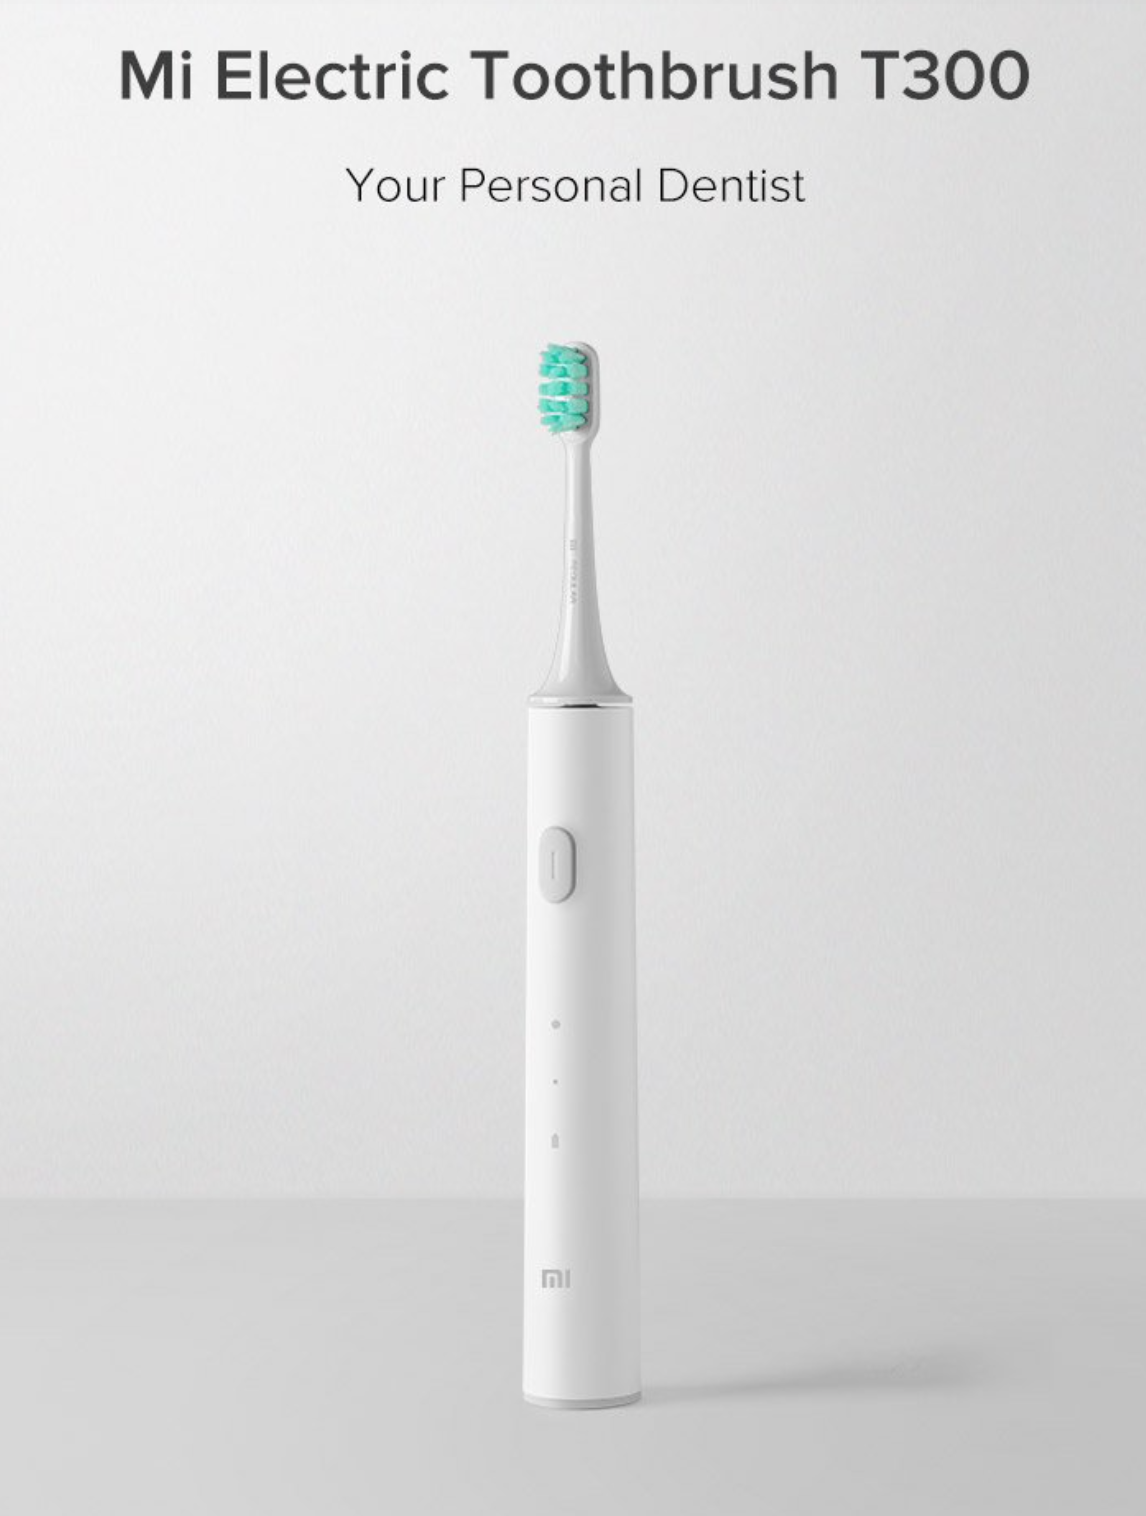 Sikat gigi Xiaomi Electric T300 diluncurkan dengan harga $ 26,99